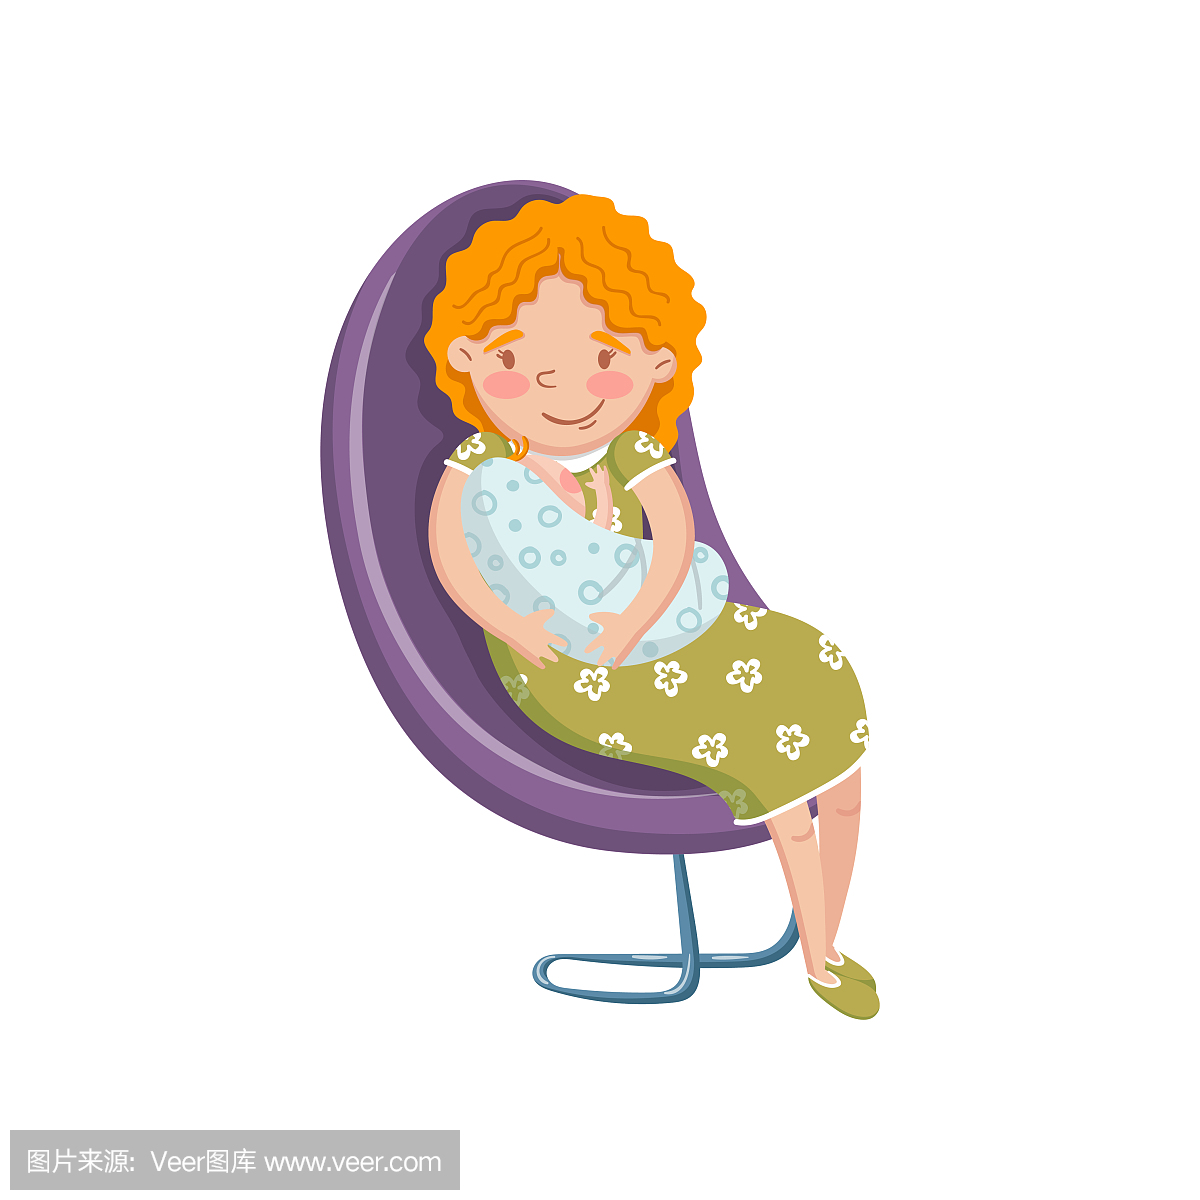 休闲服装坐在椅子上,刚出生的婴儿卡通矢量图